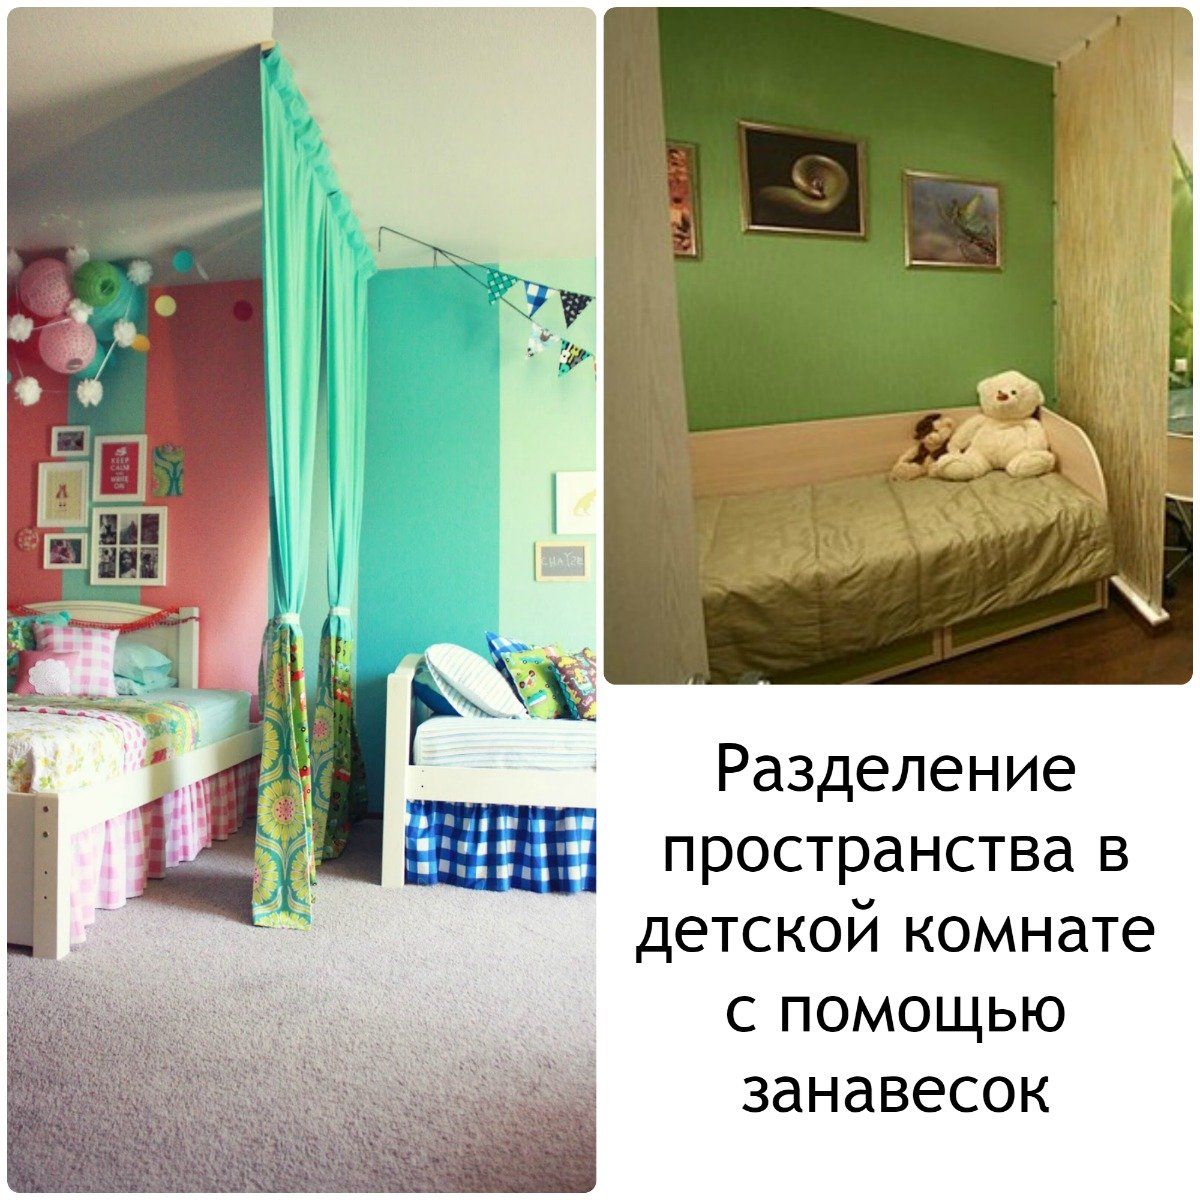 Разделение детской комнаты шторами